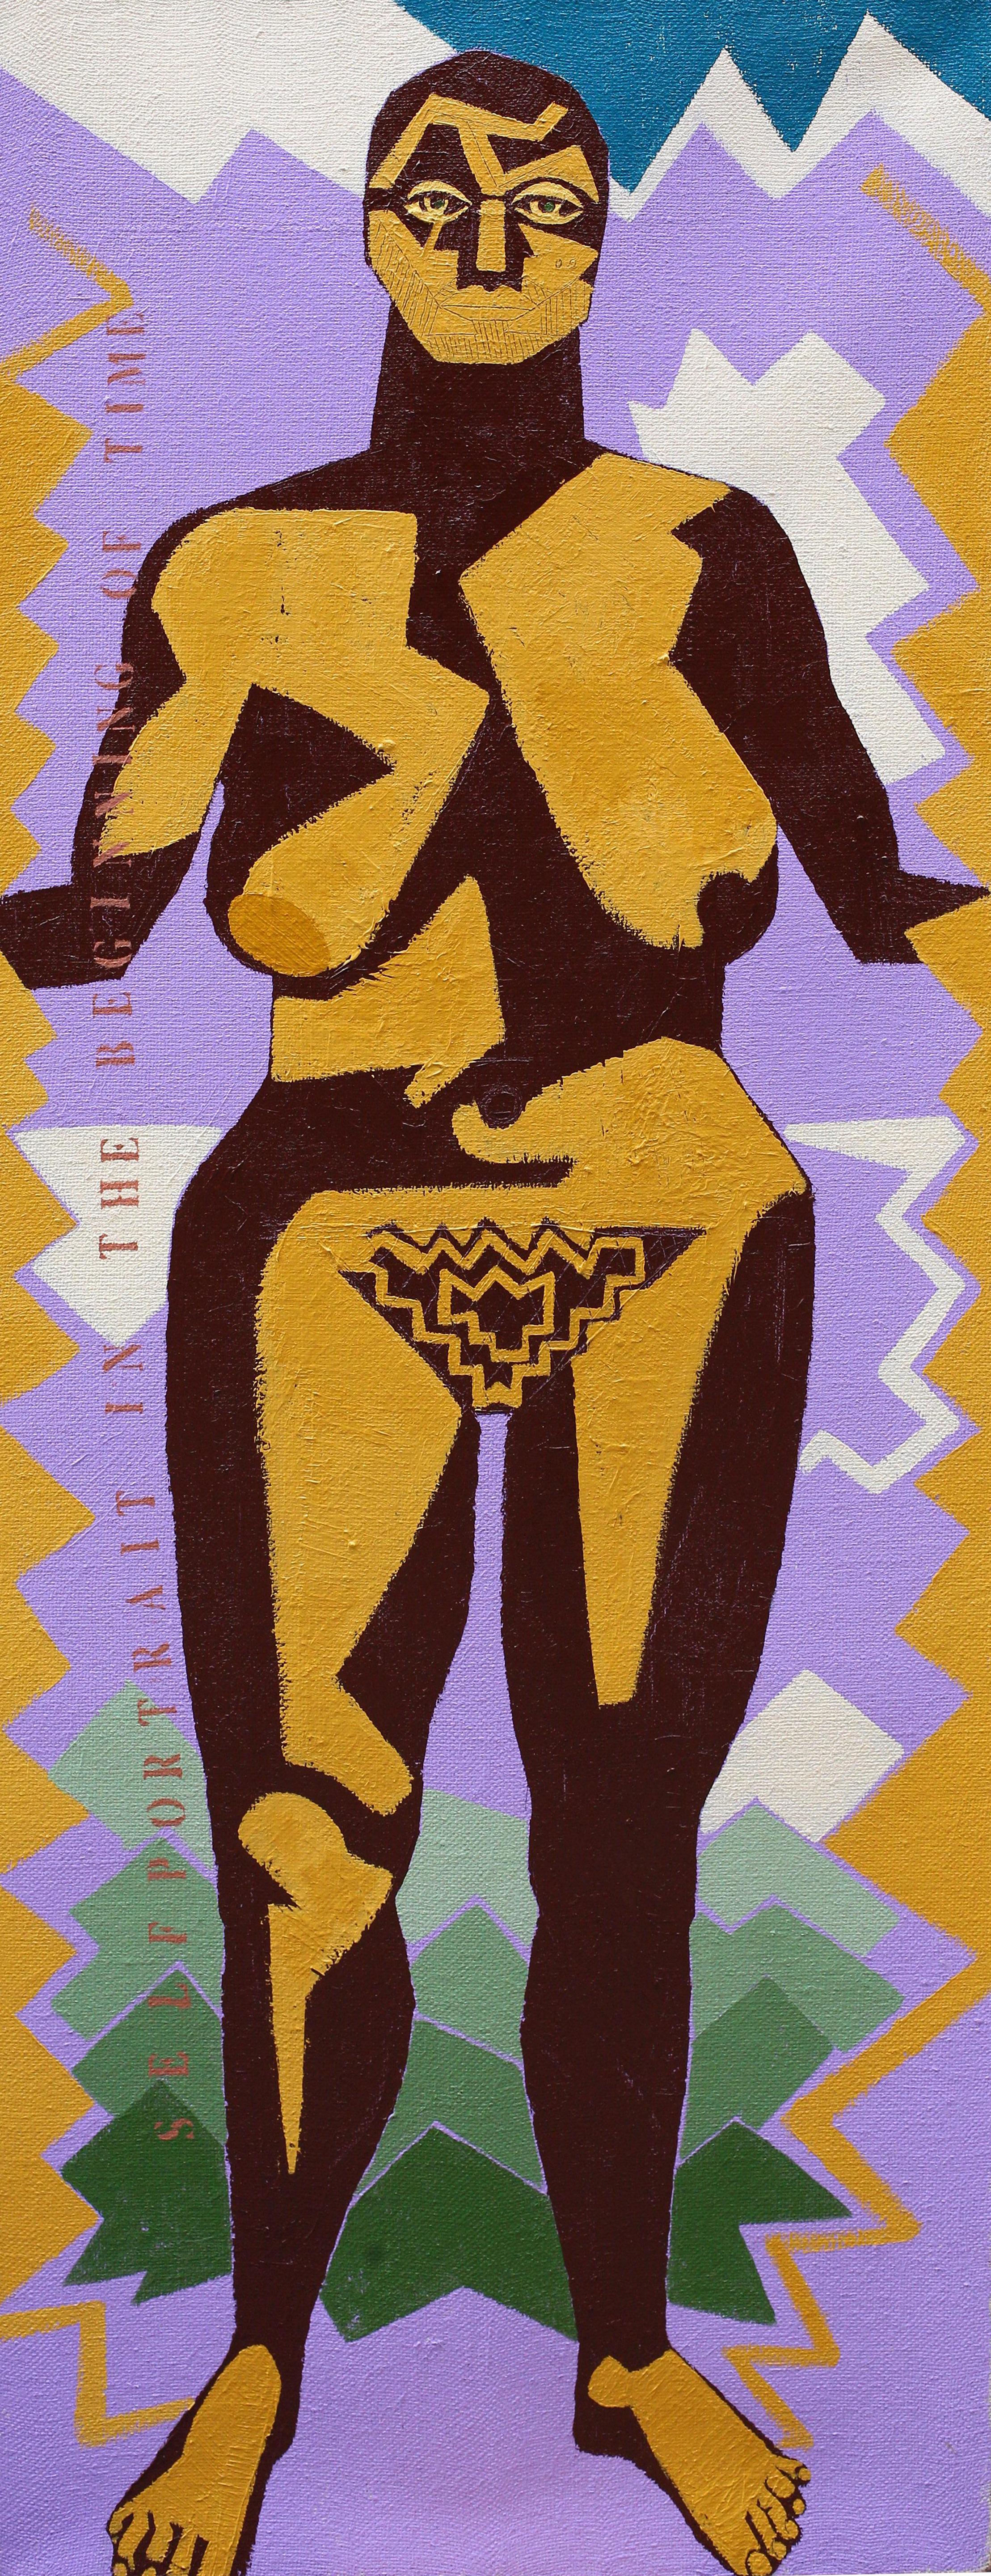 Alexandru Rădvan Nude Painting – Selbstporträt „Der Beginn der Zeit“ – zeitgenössisch, weiblich, violett, gelb